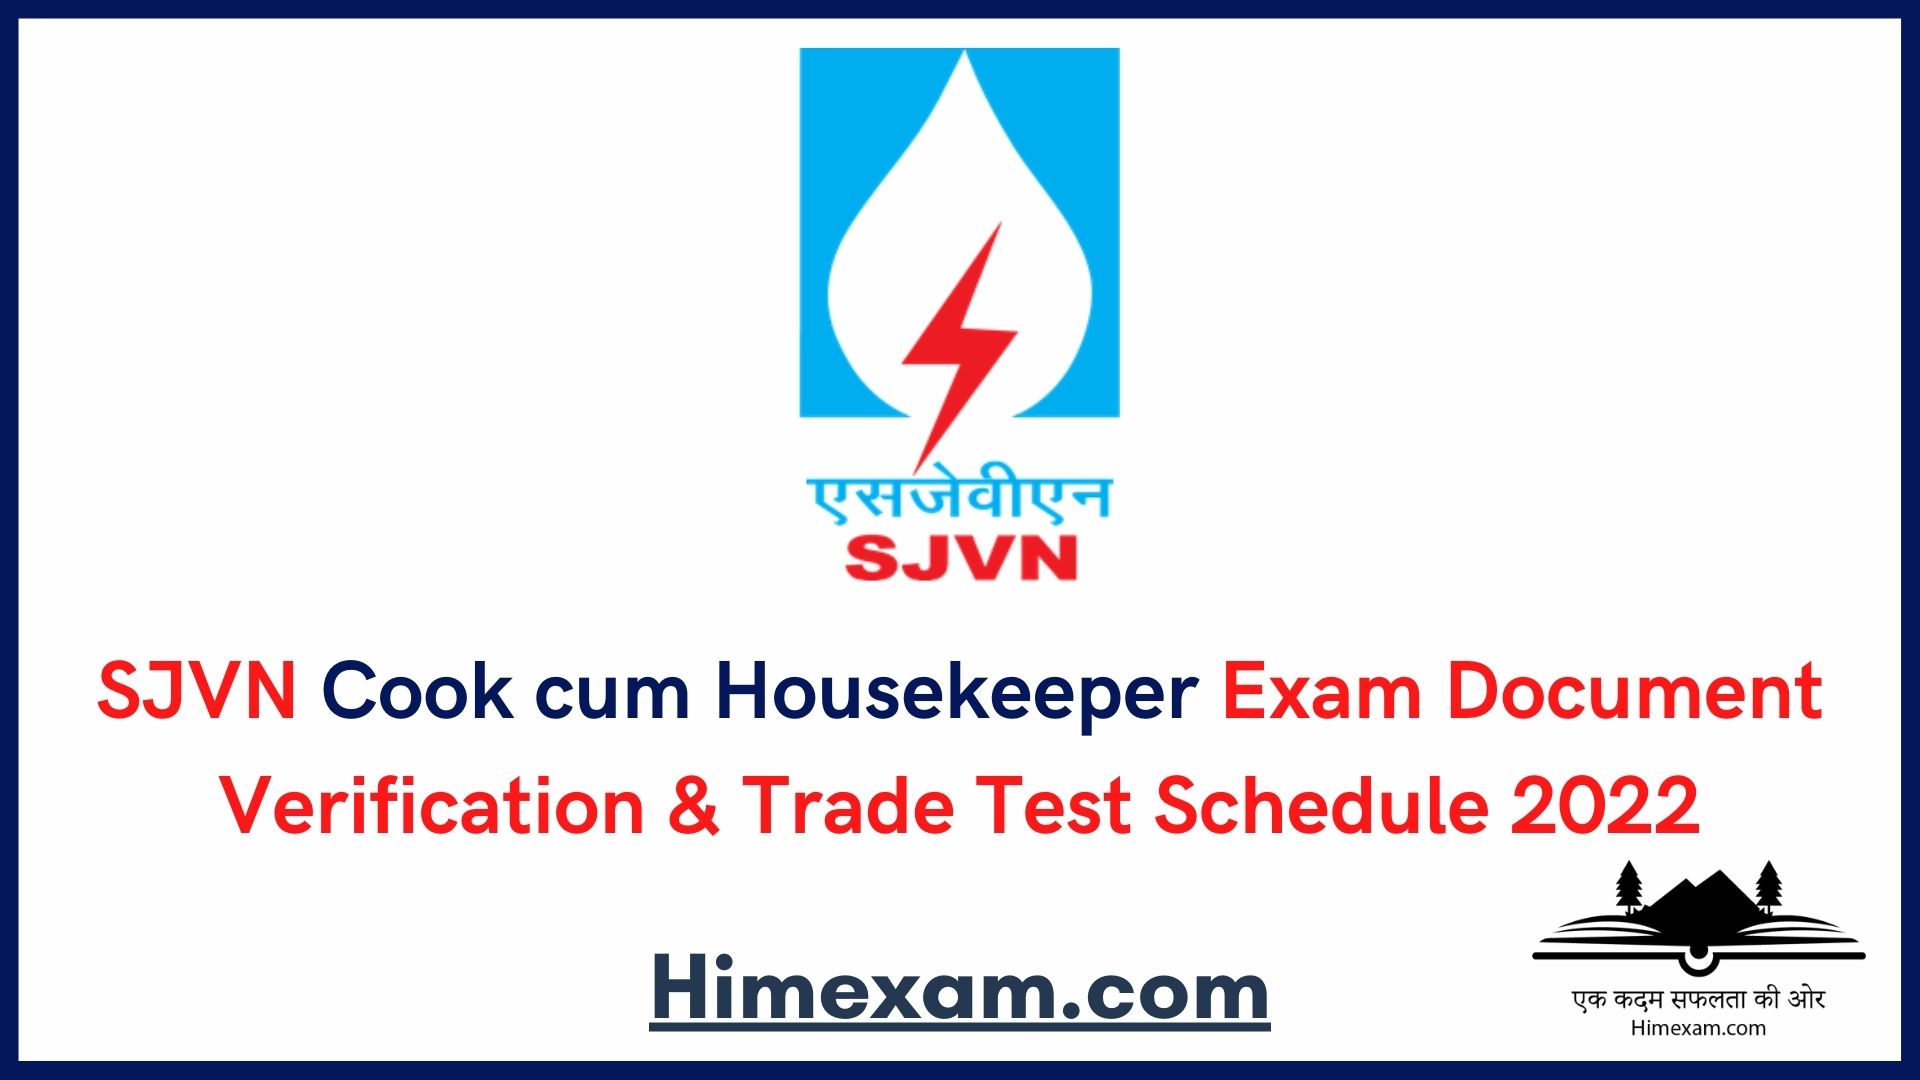 SJVN Cook cum Housekeeper Exam Document Verification & Trade Test Schedule 2022